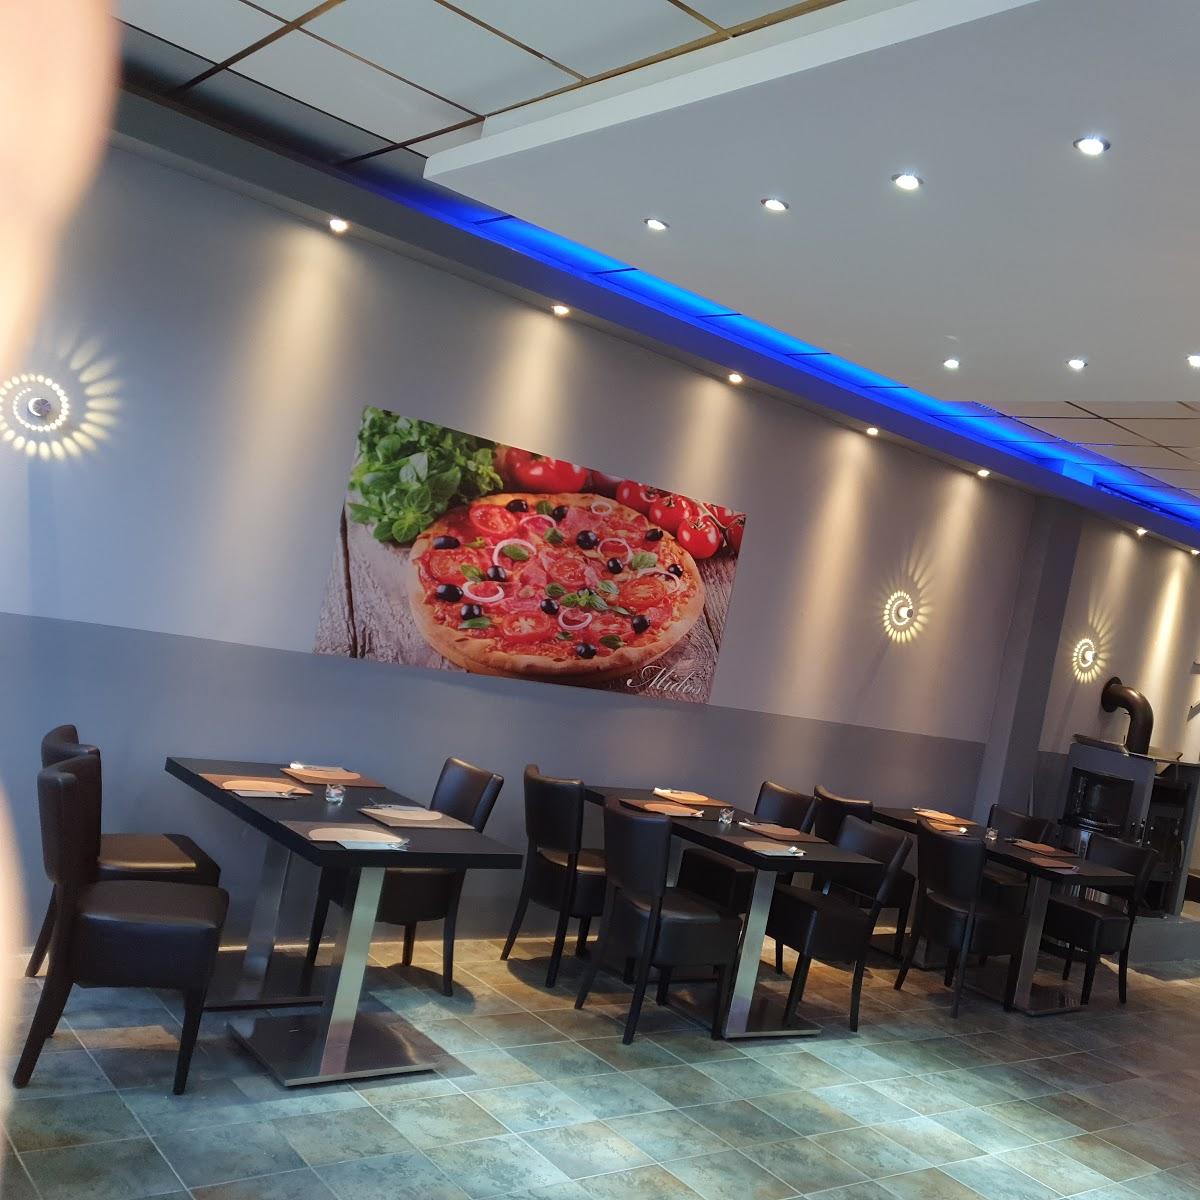 Restaurant "Midos Pizzeria" in Hamm